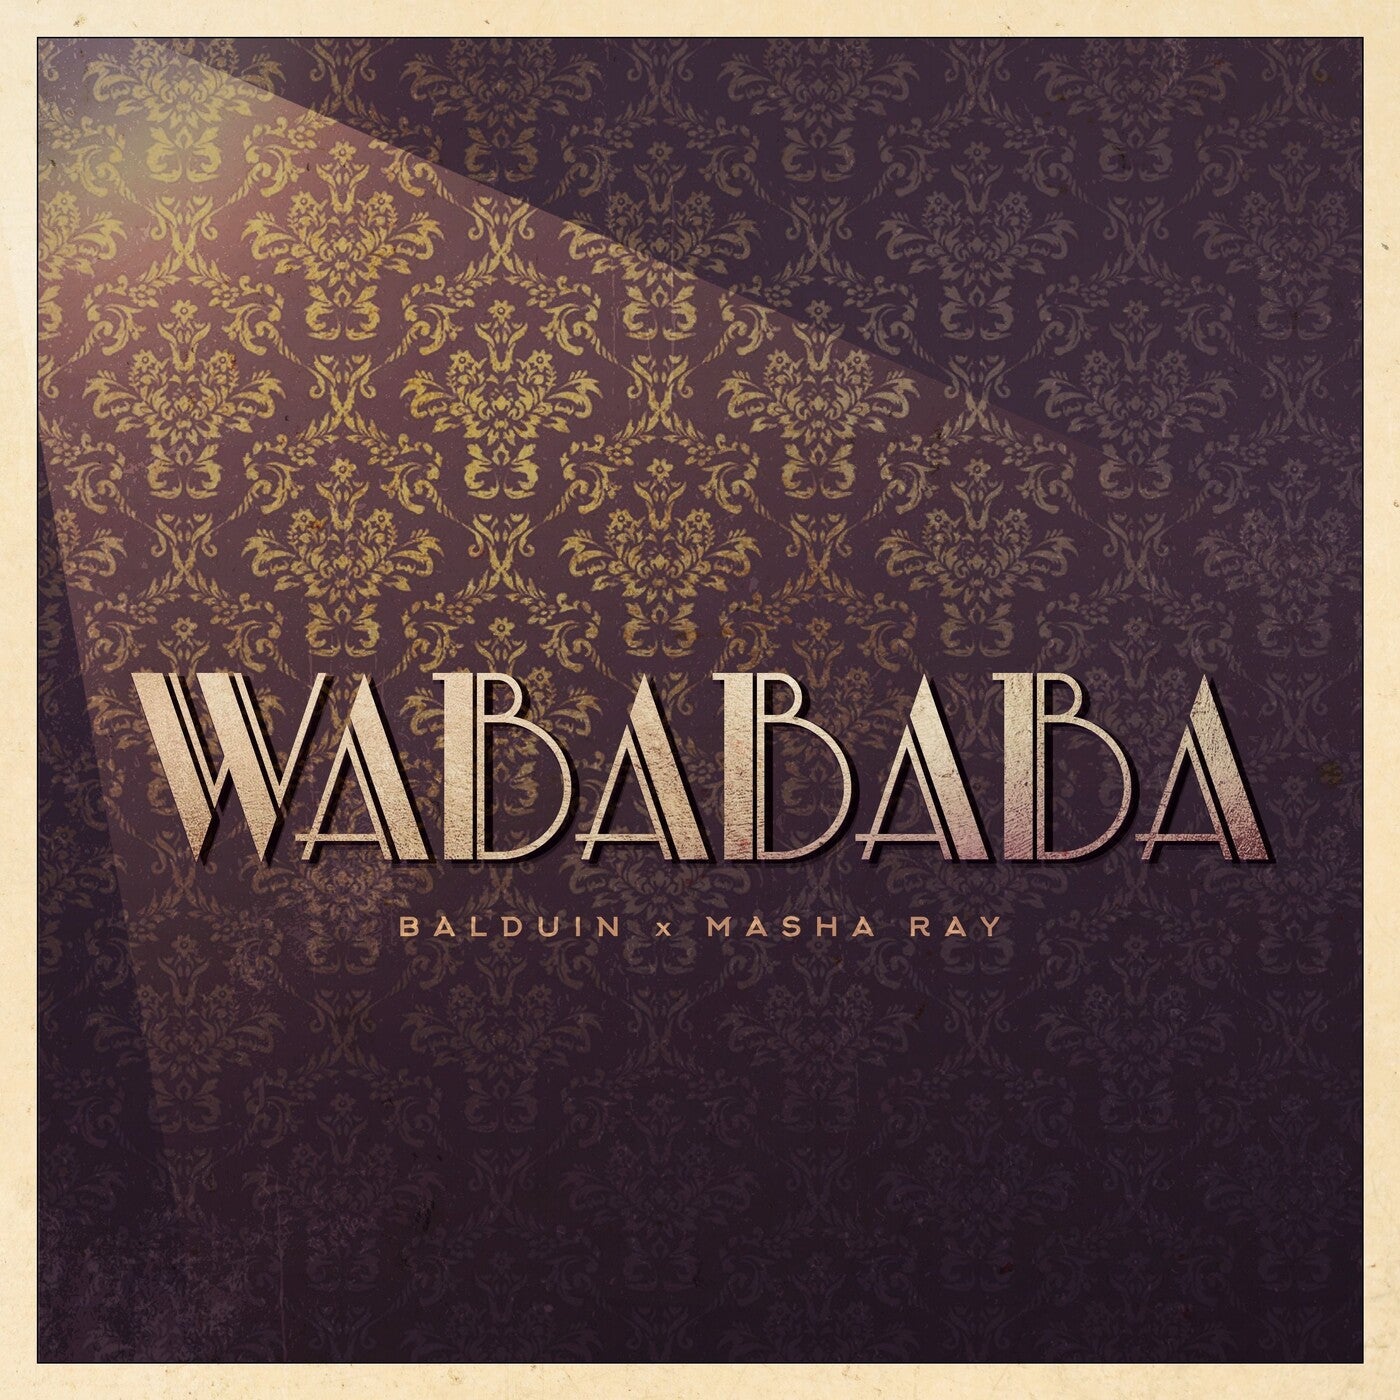 Wabababa